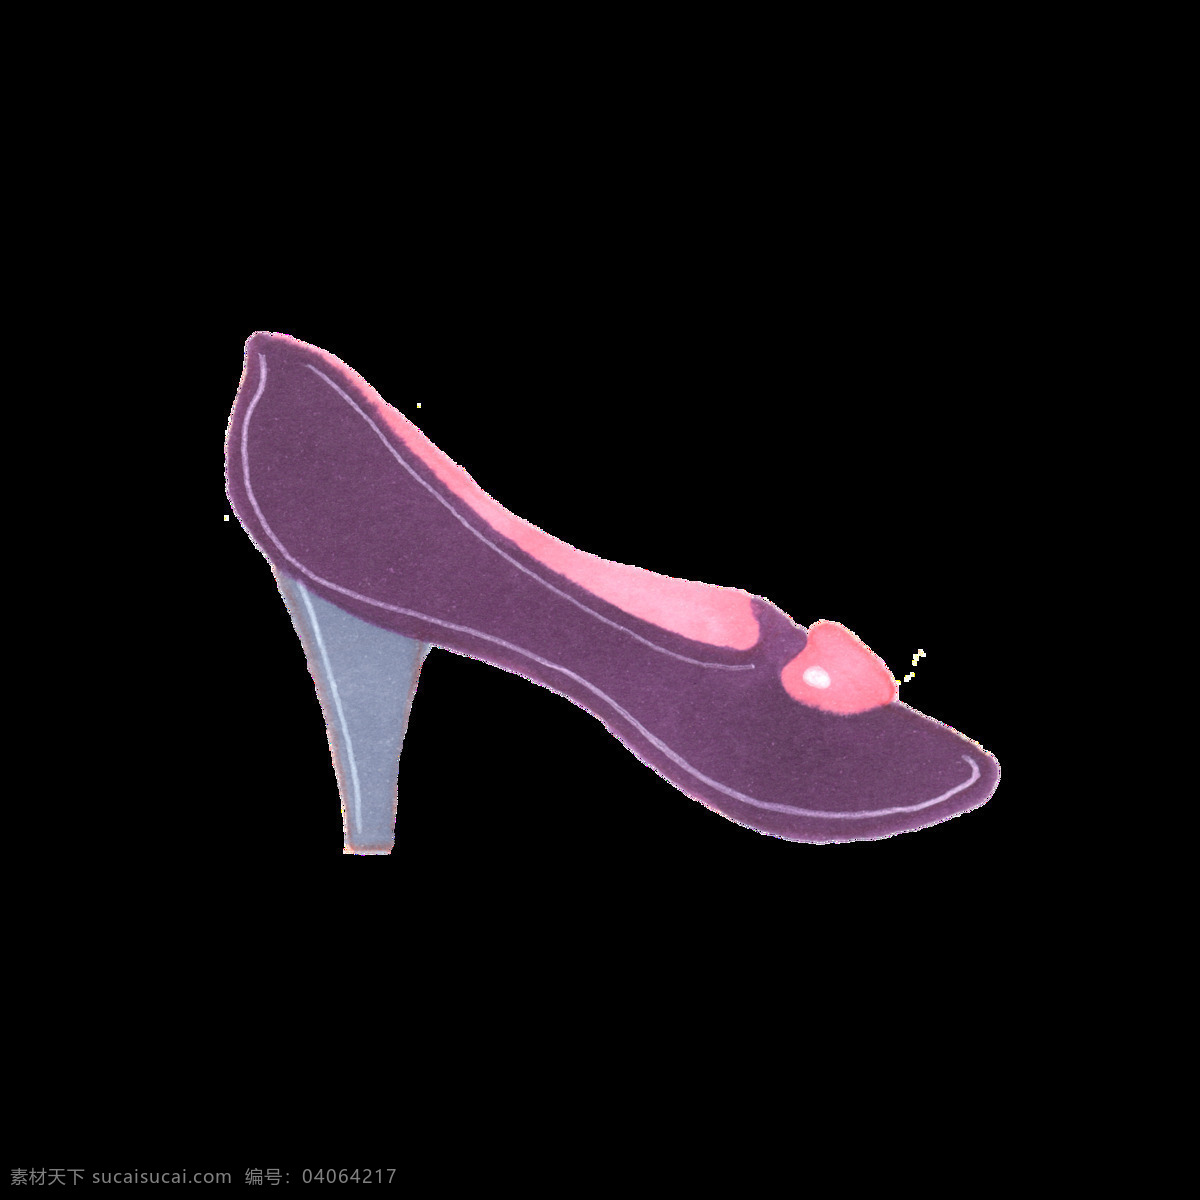 紫色 高跟鞋 透明 卡通 抠图专用 装饰 设计素材